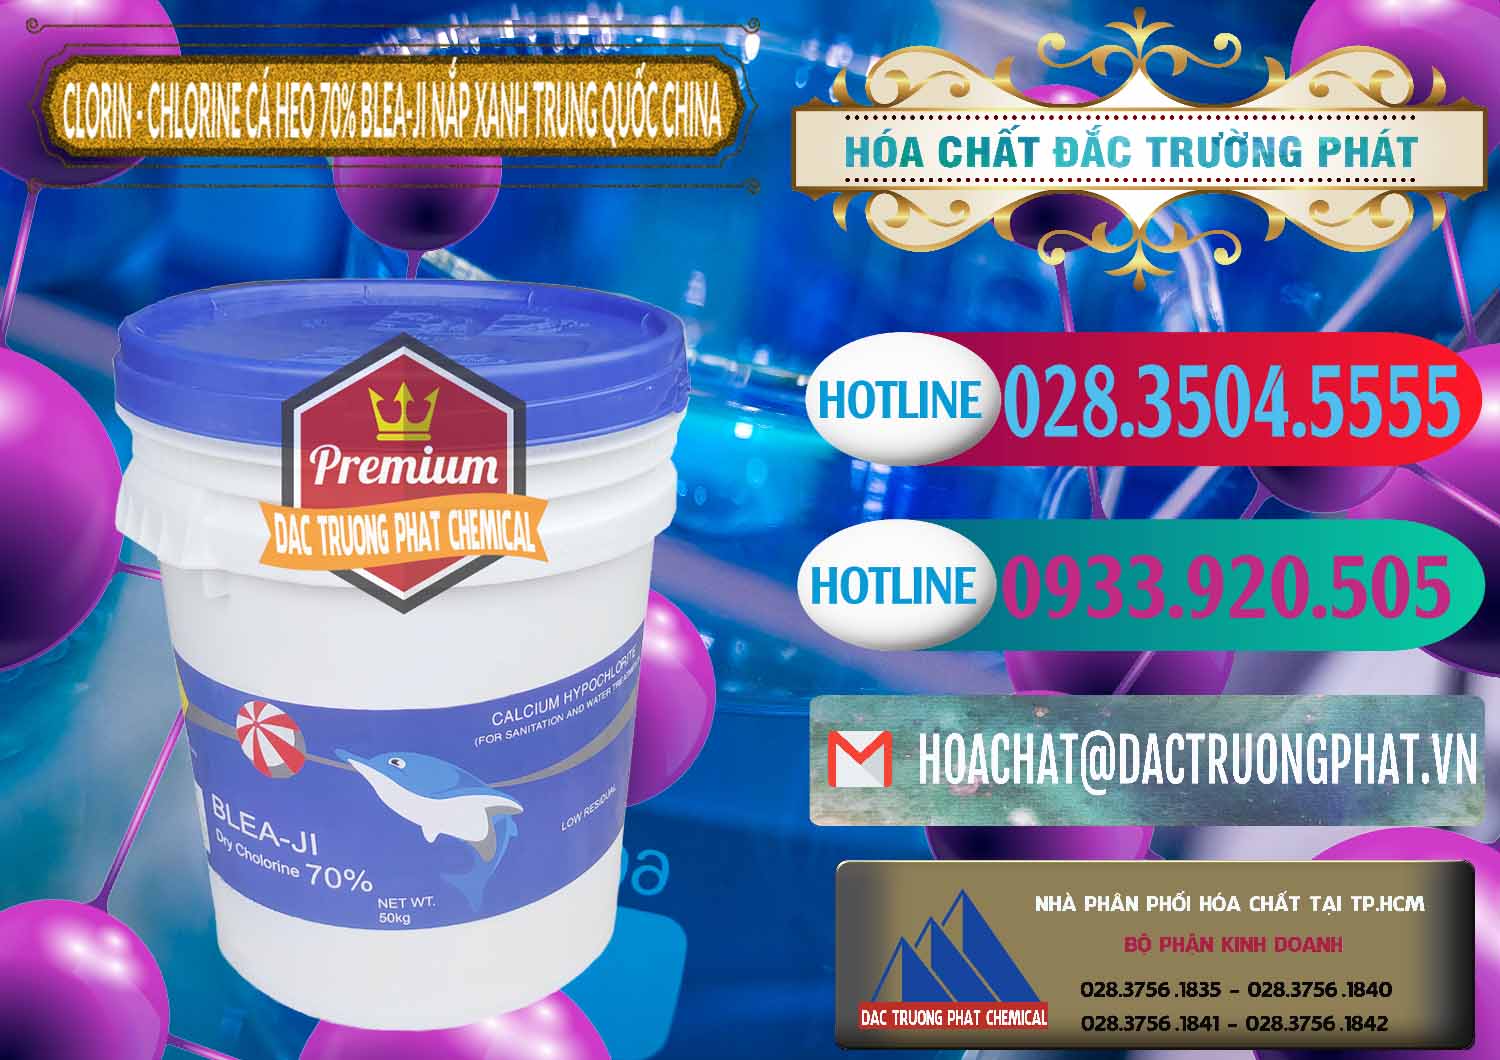 Đơn vị chuyên nhập khẩu _ bán Clorin - Chlorine Cá Heo 70% Cá Heo Blea-Ji Thùng Tròn Nắp Xanh Trung Quốc China - 0208 - Cty phân phối - cung cấp hóa chất tại TP.HCM - truongphat.vn